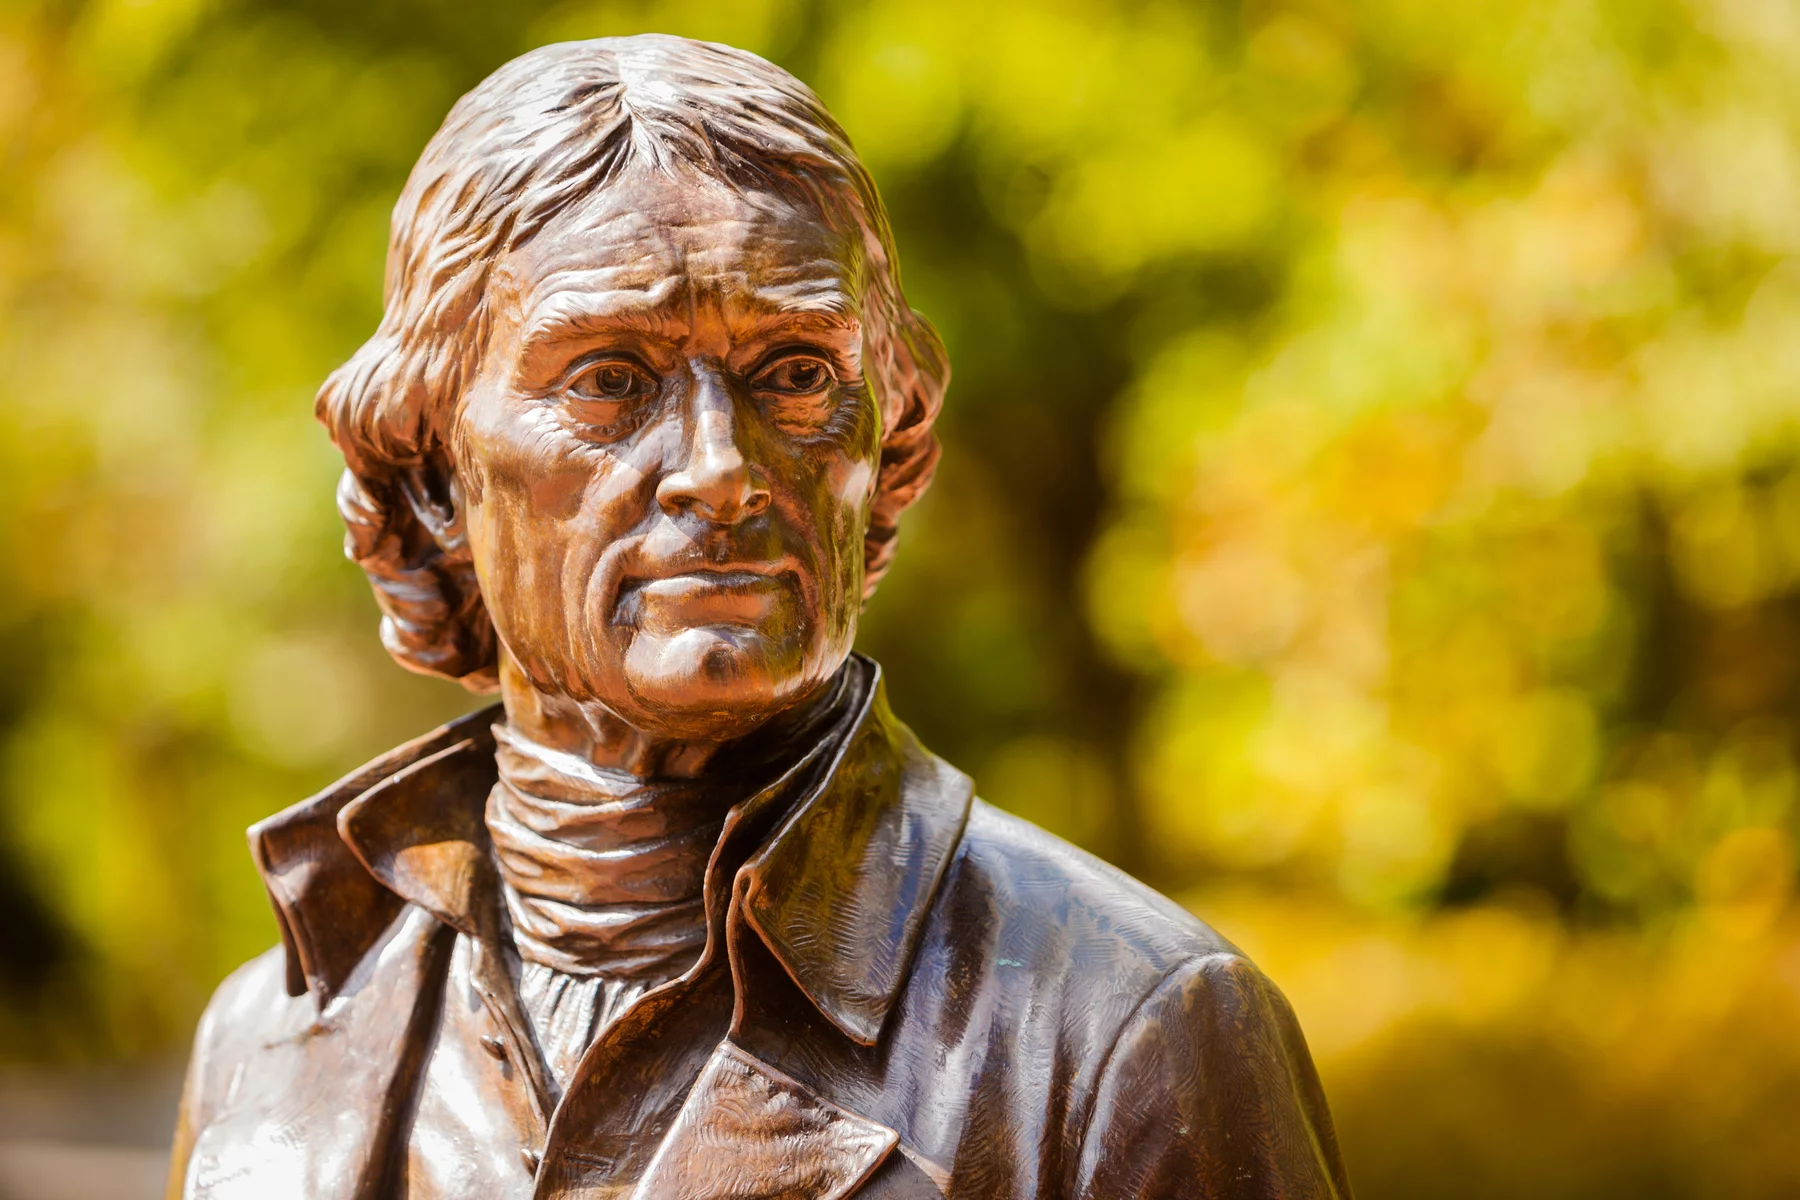 A statue of Thomas Jefferson